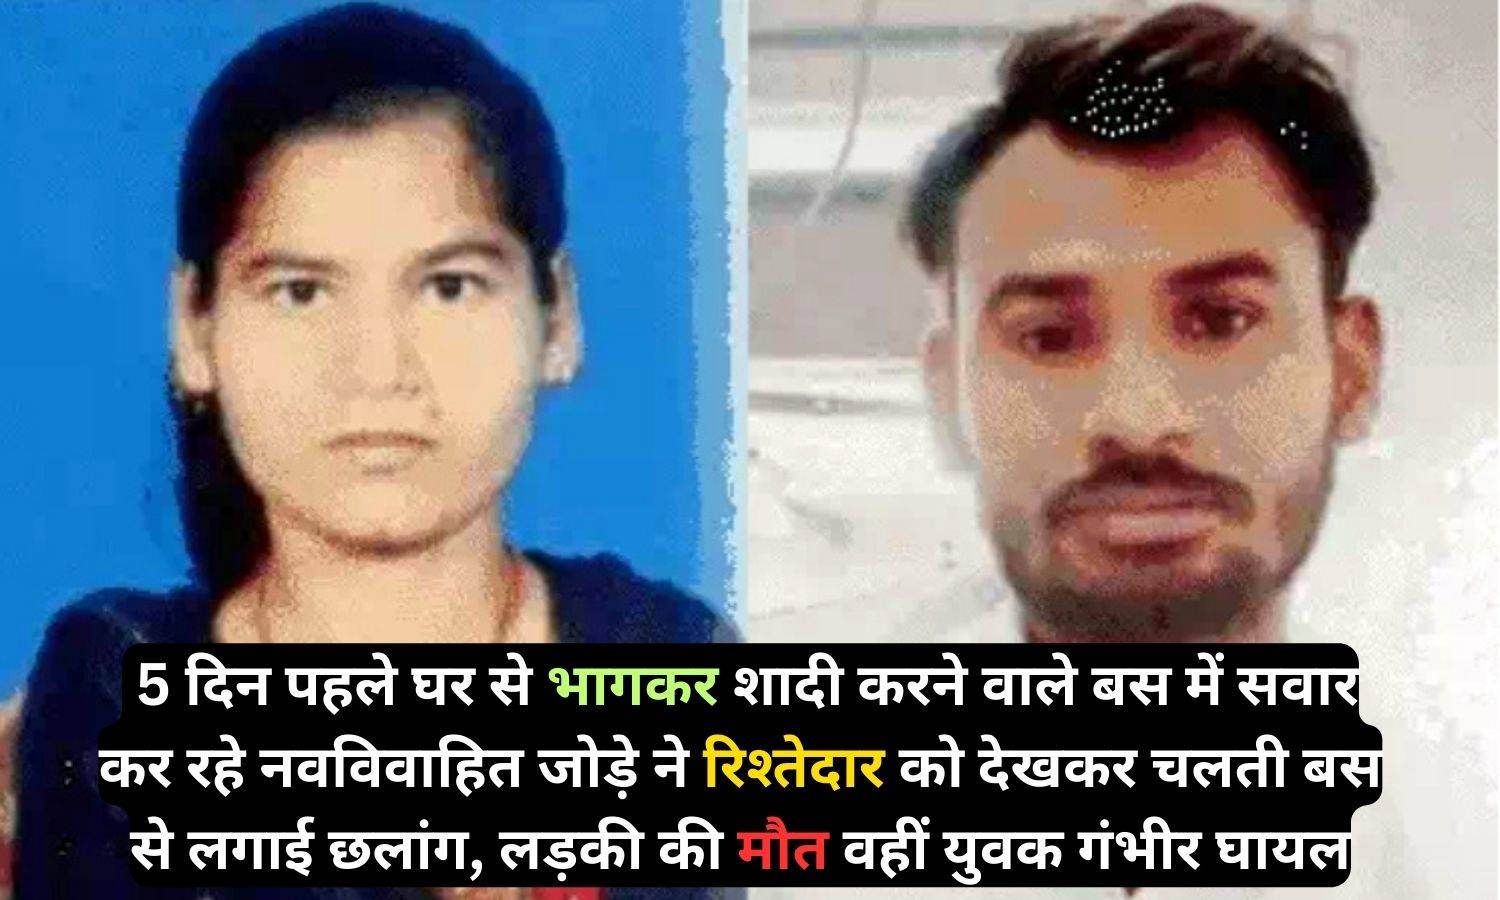 Rajasthan News: 5 दिन पहले घर से भागकर शादी करने वाले बस में सवार कर रहे नवविवाहित जोड़े ने रिश्तेदार को देखकर चलती बस से लगाई छलांग, लड़की की मौत वहीं युवक गंभीर घायल